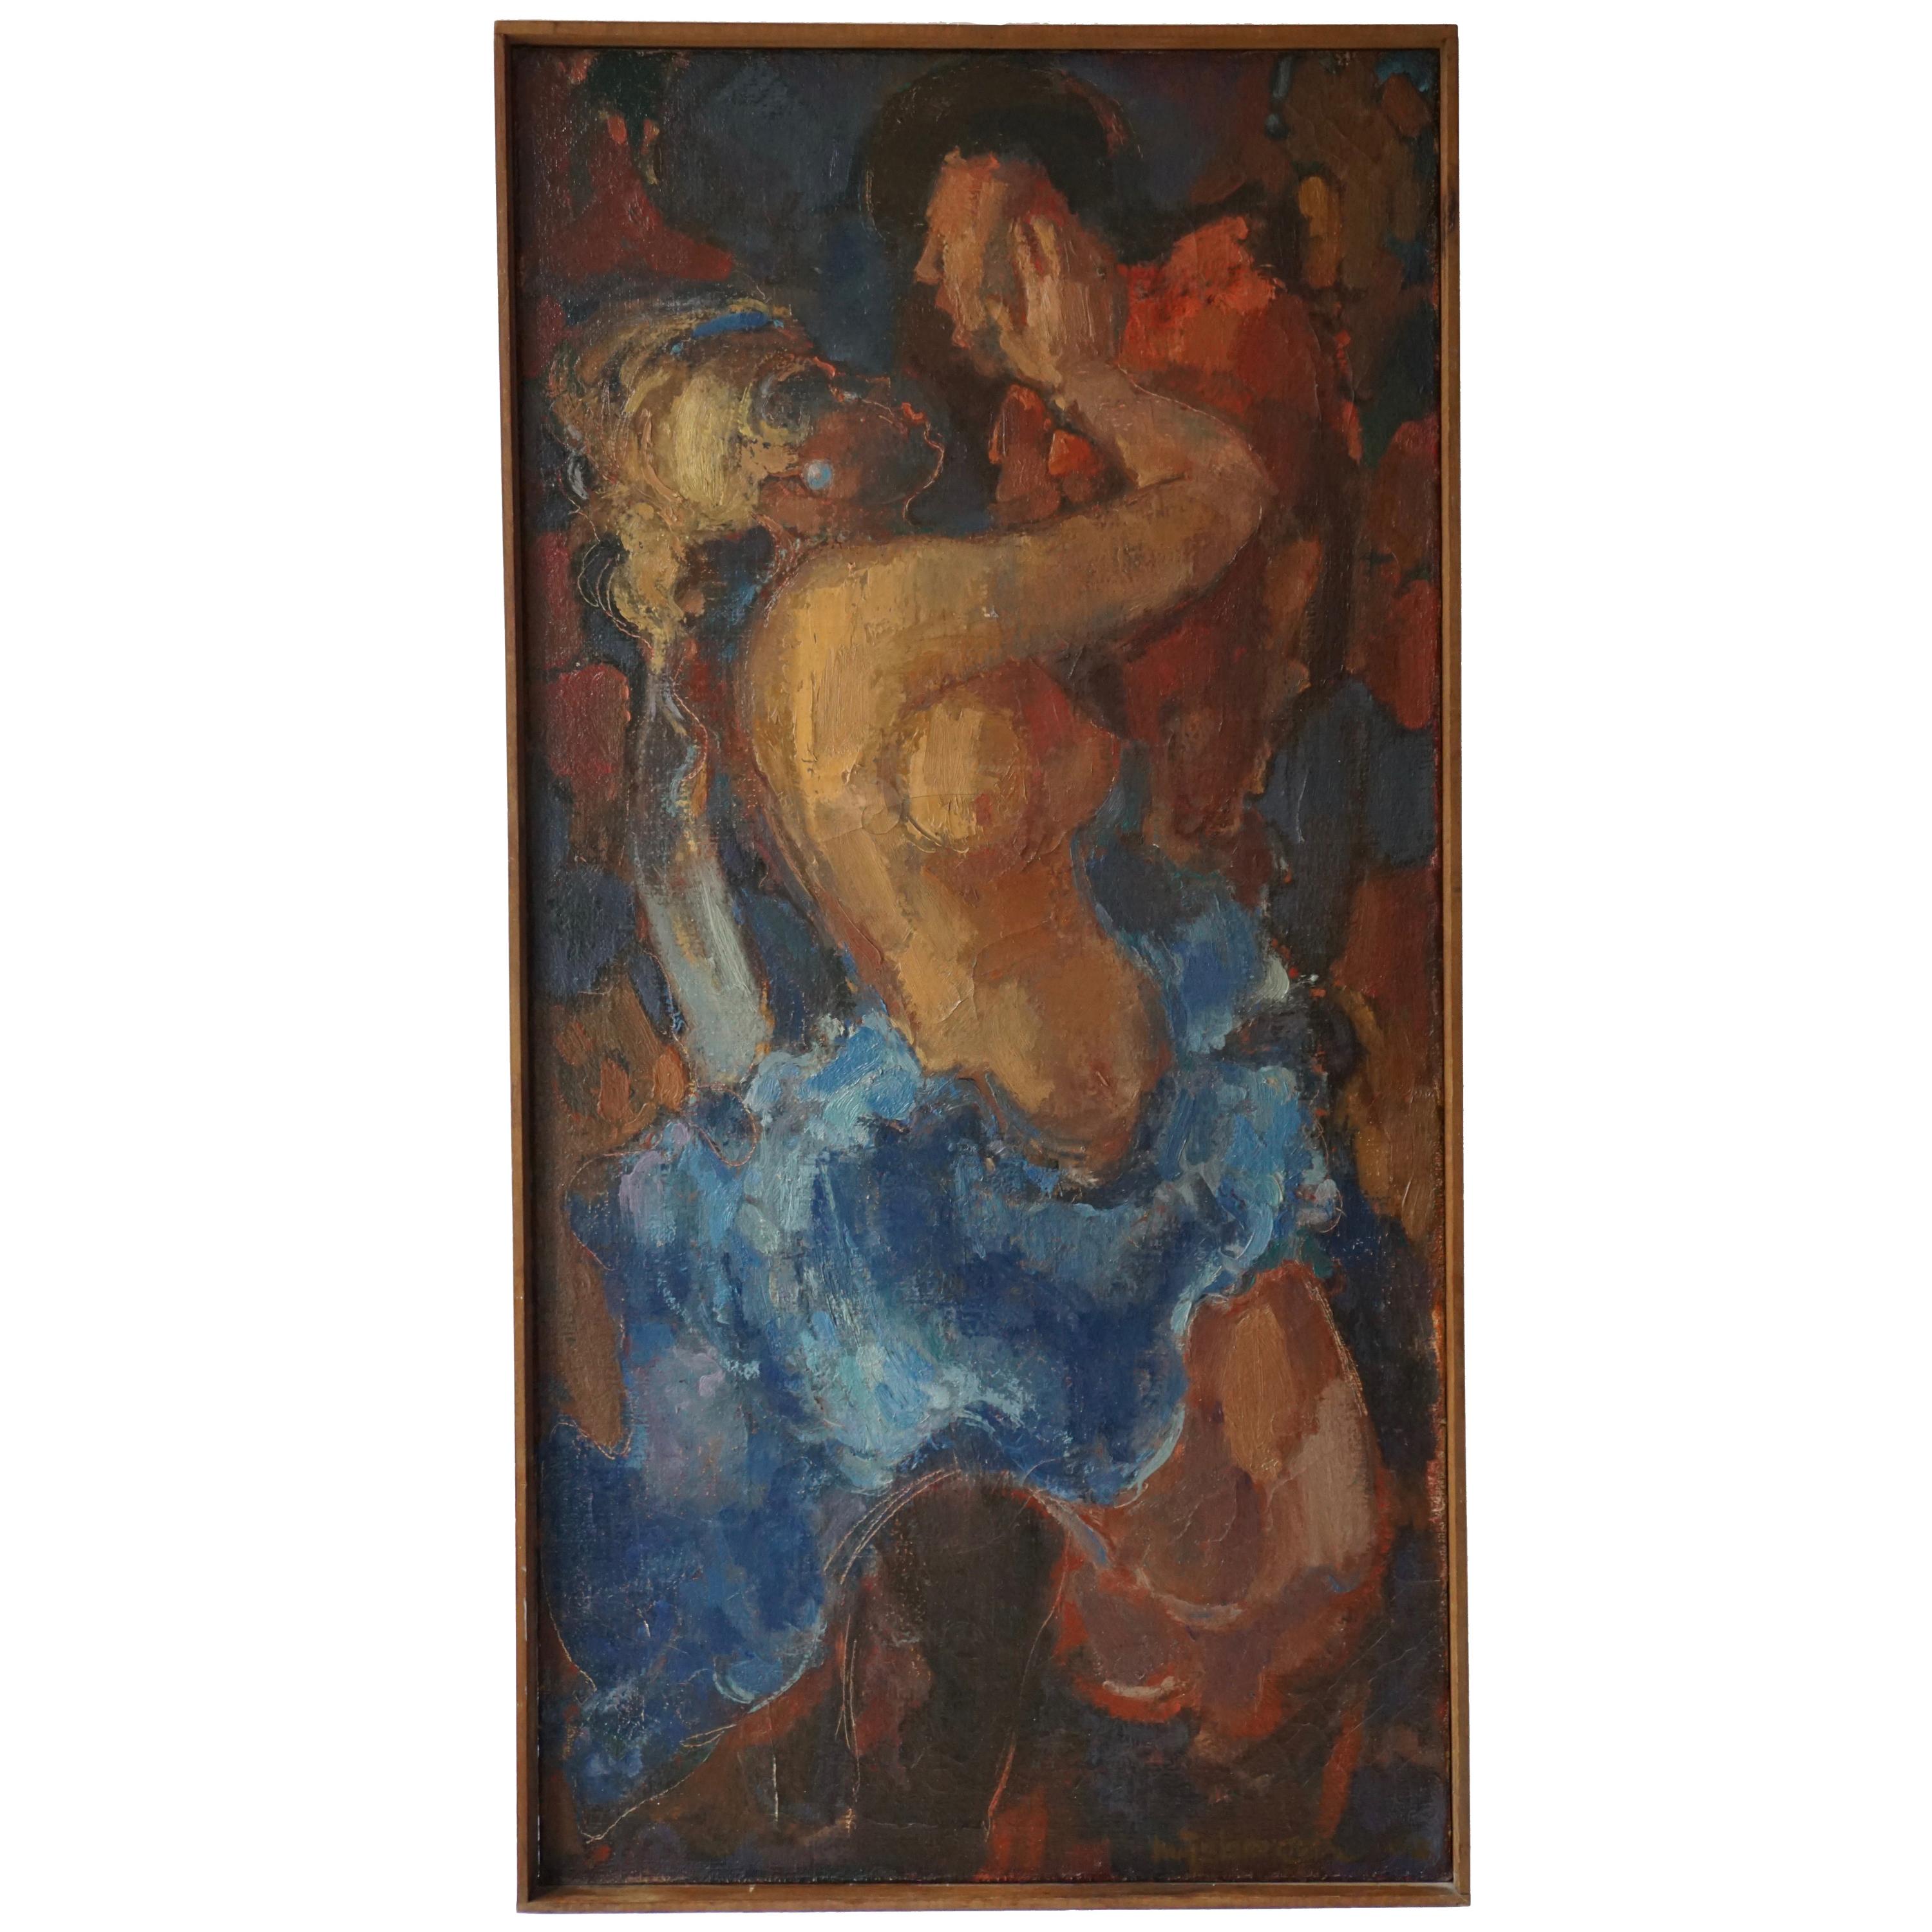 Peinture à l'huile sur toile « Kiss » de J Mijsbergen, 1968, Hollande